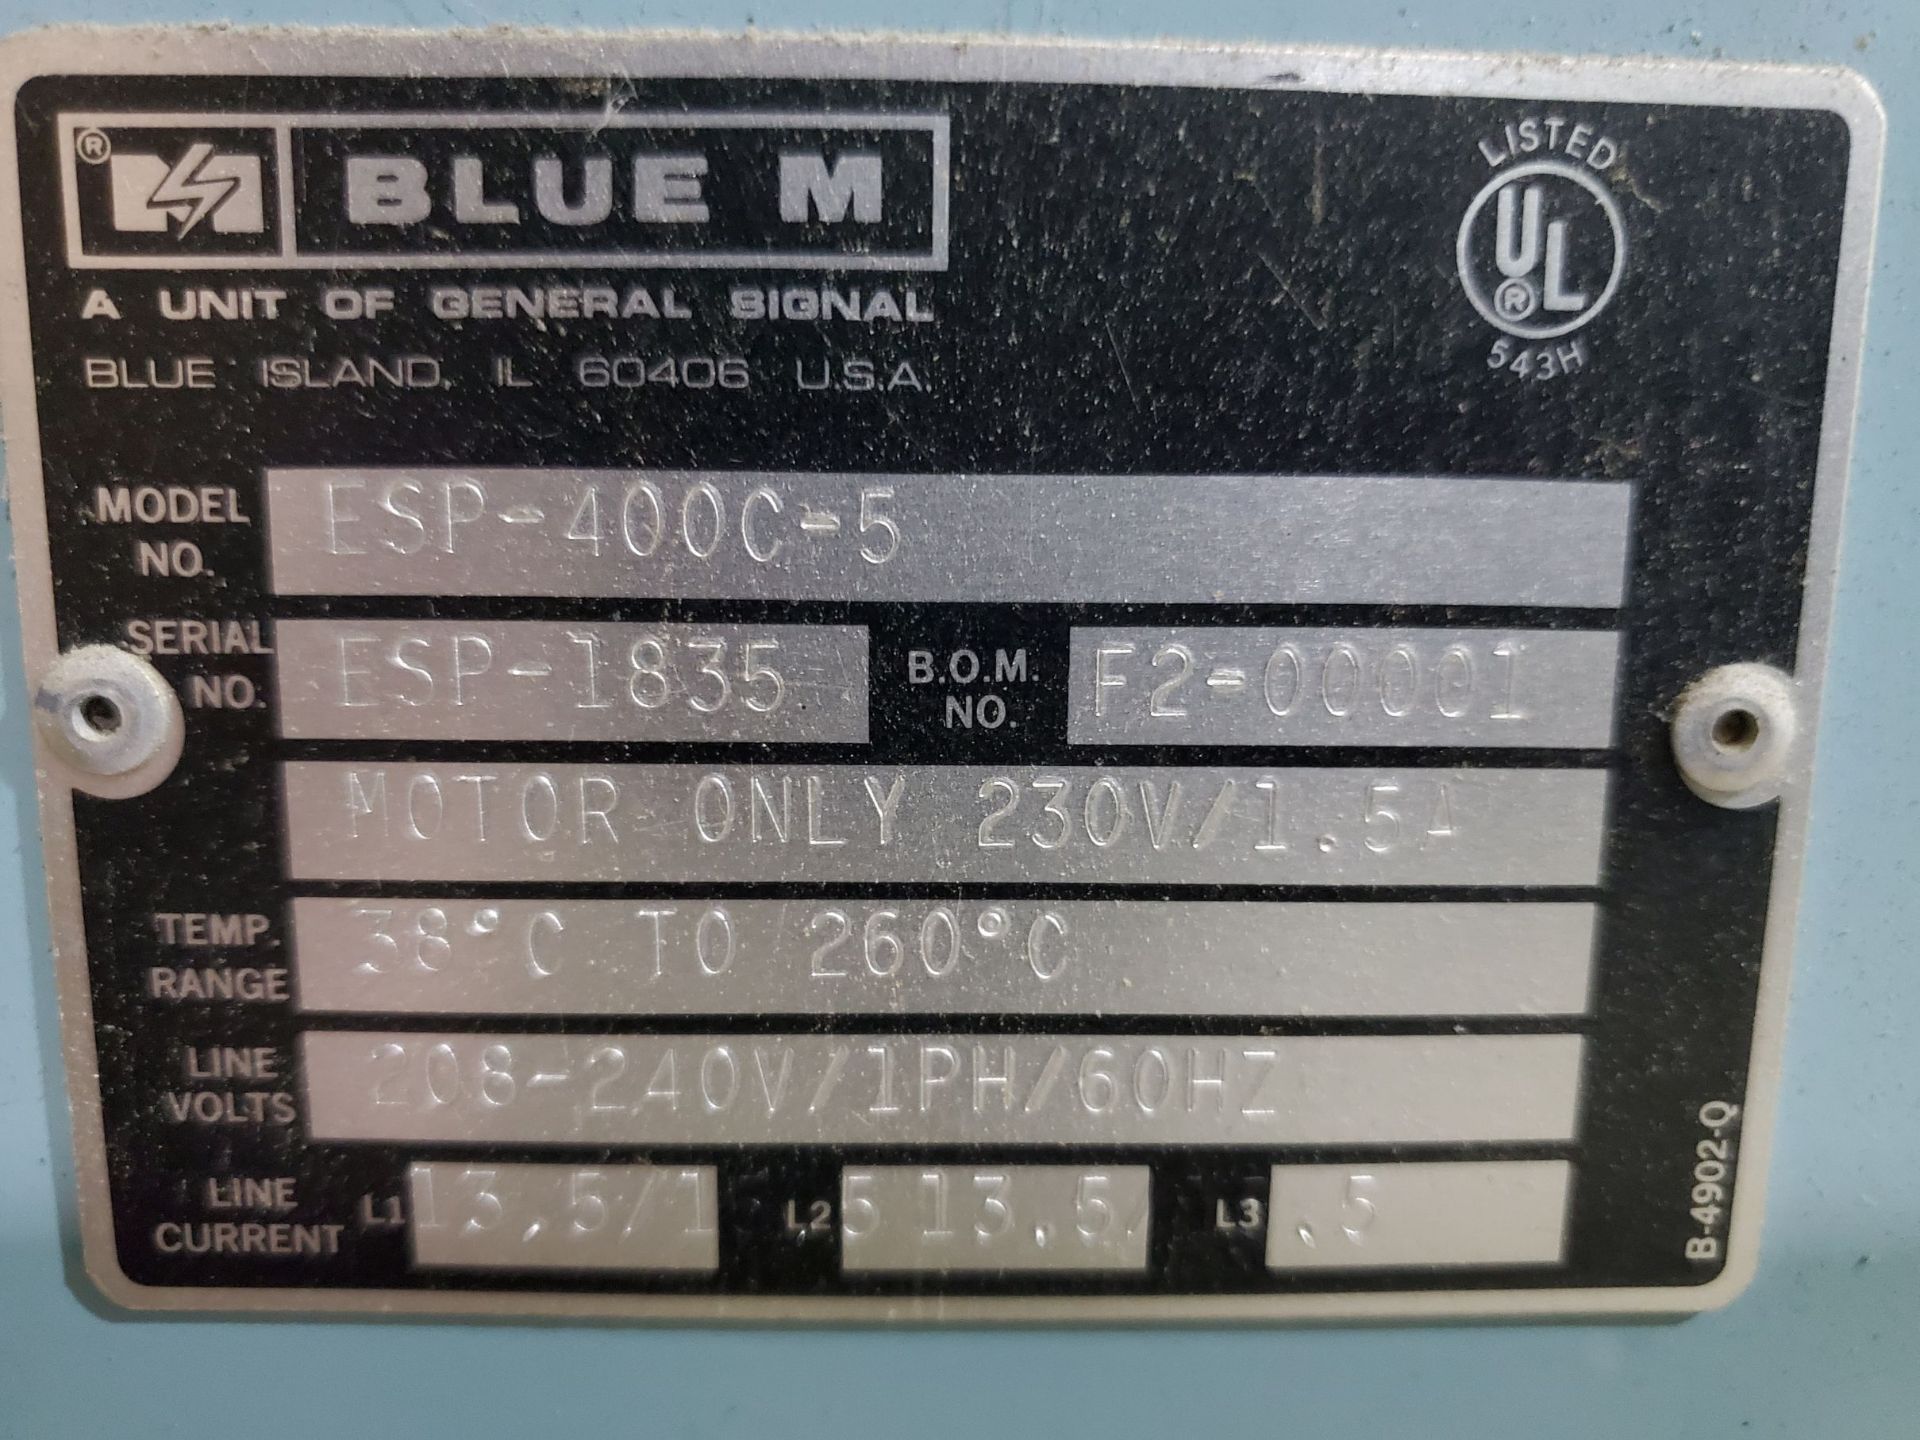 Blue M Lab Oven, Model ESP-400C-5, Serial Number ESP-1835, Temperature Range 38 deg C to 260 deg - Image 2 of 5